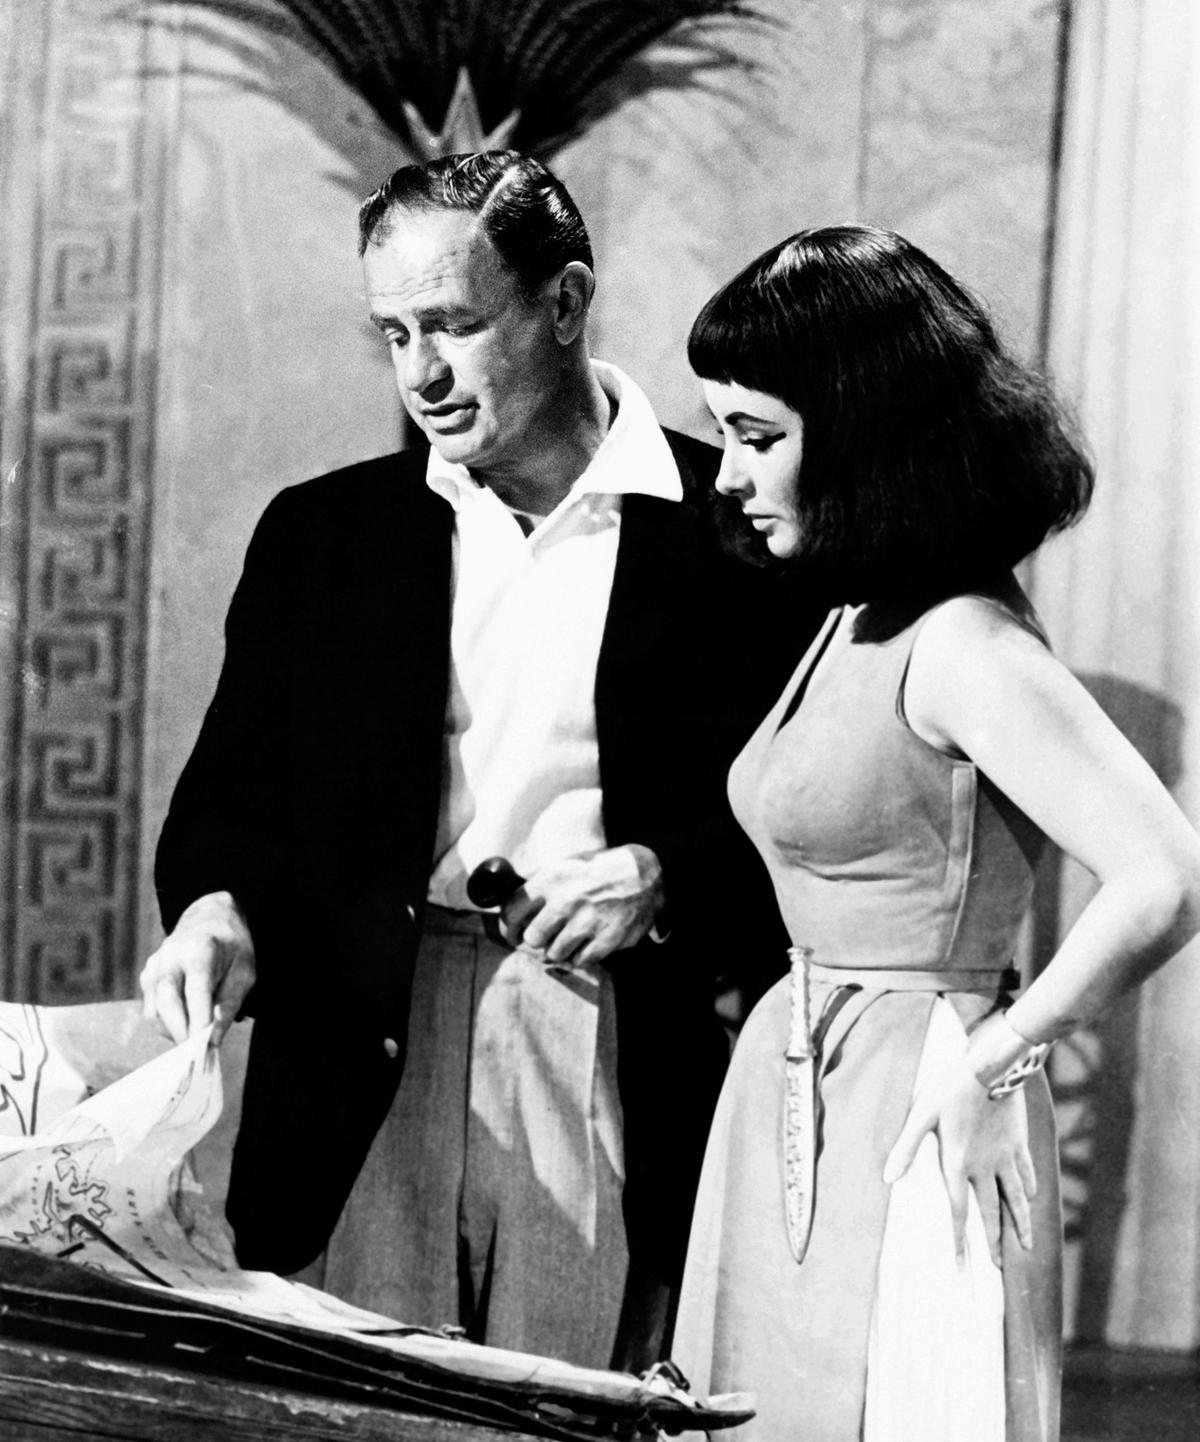 Regisseur Joseph Mankiewicz und Elizabeth Taylor am Set von "Cleopatra", 1963.